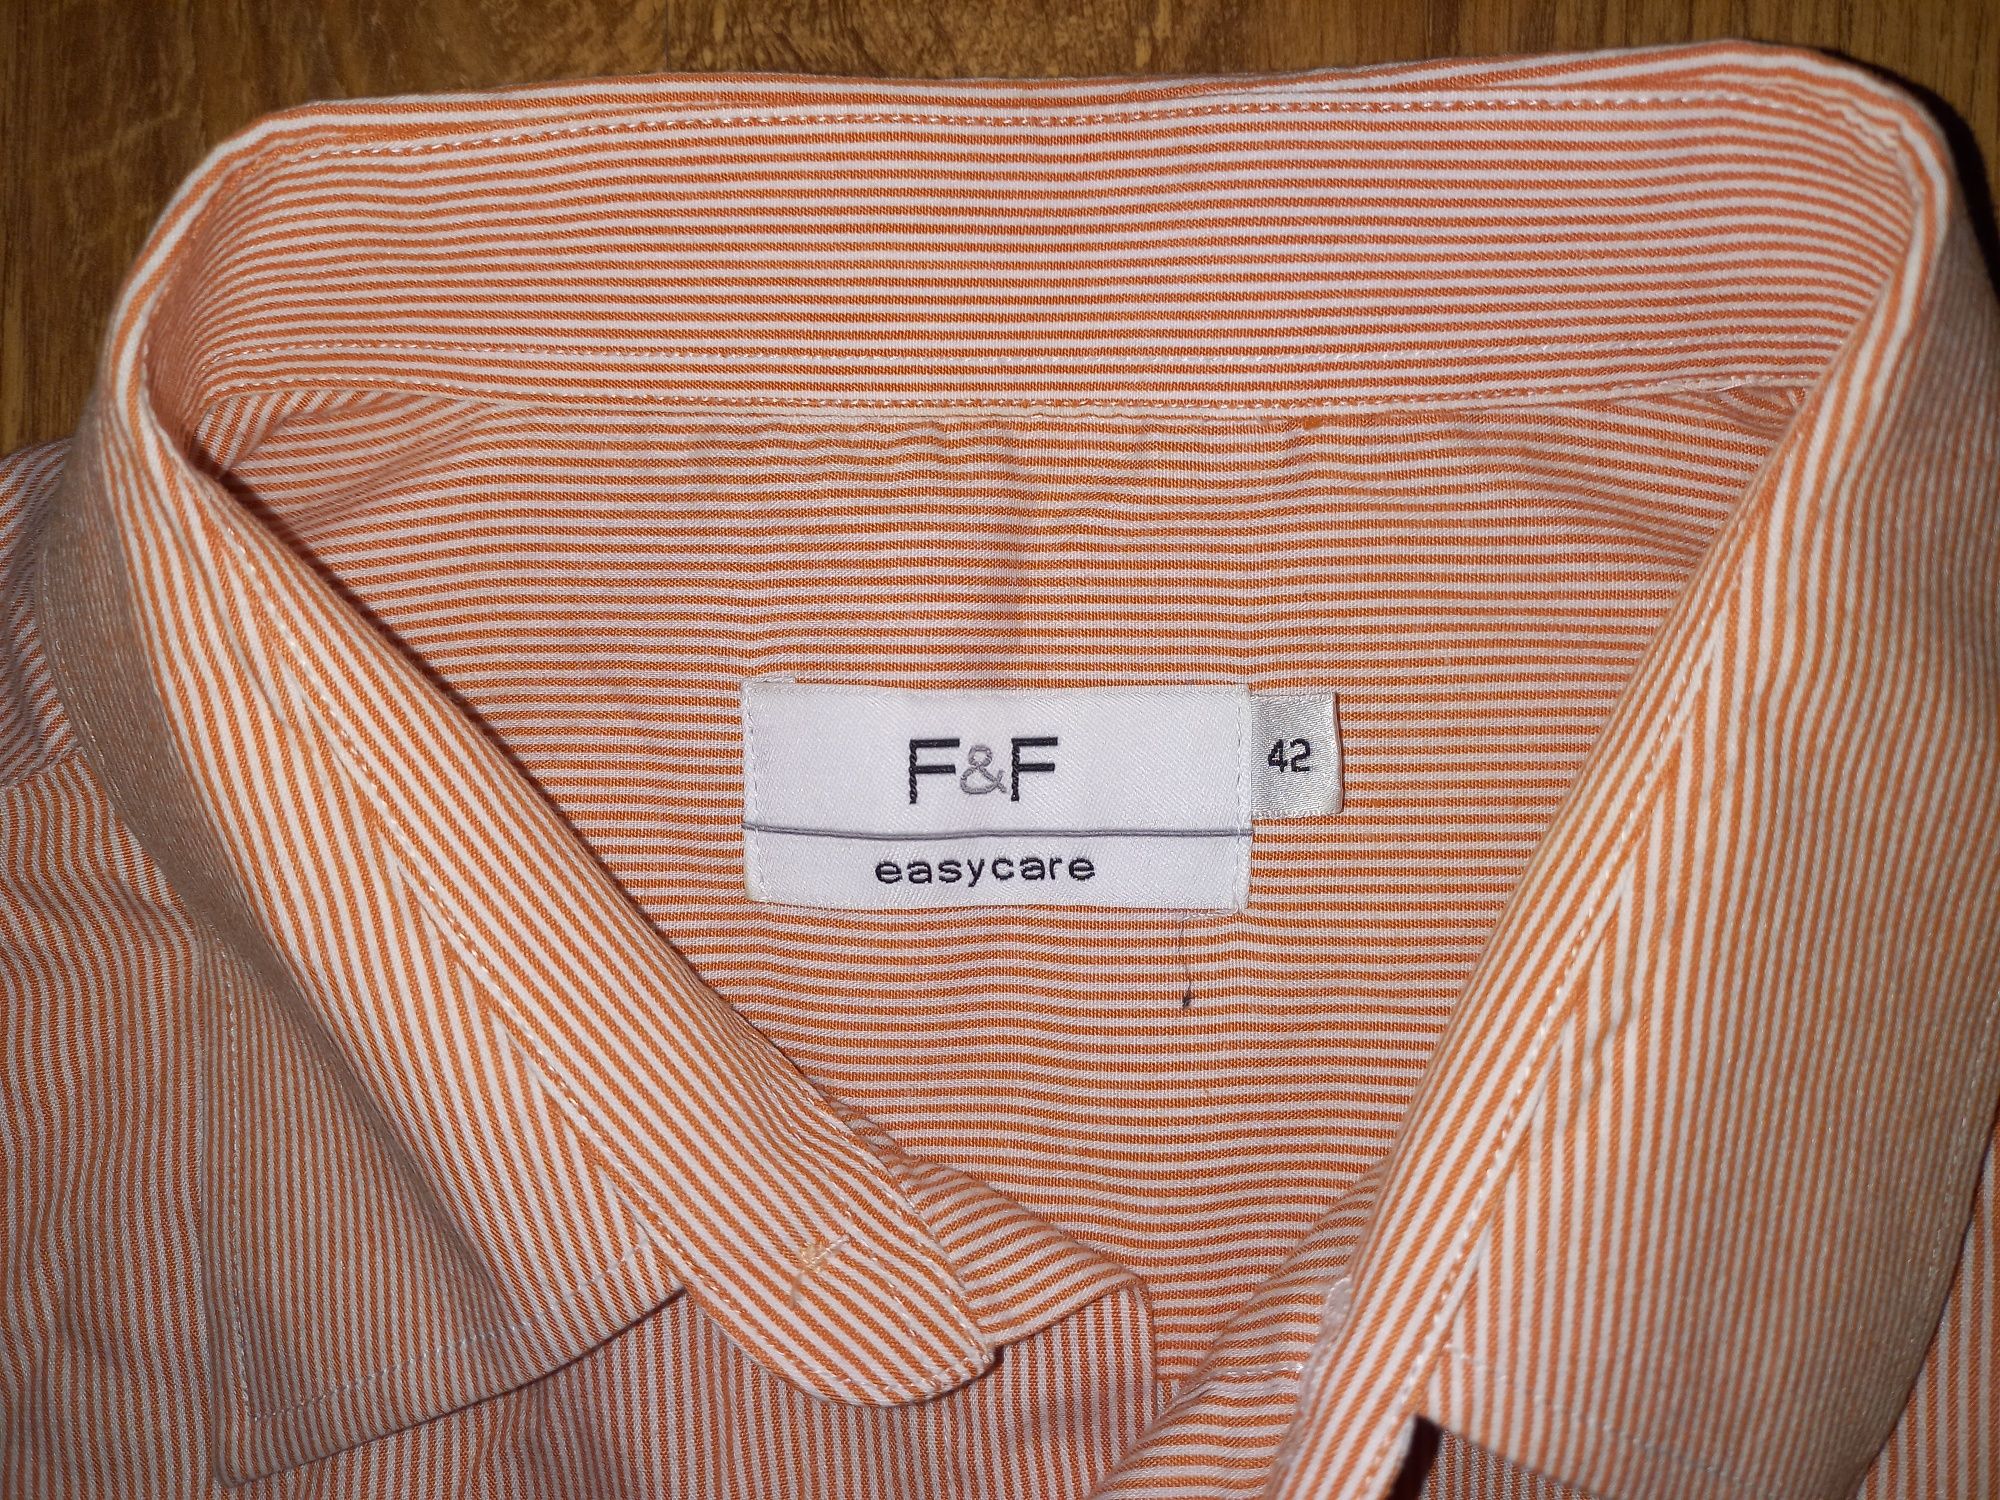 [126cm pod pachami] Pomarańczowa koszula męska w paski | r. XL/koł. 42